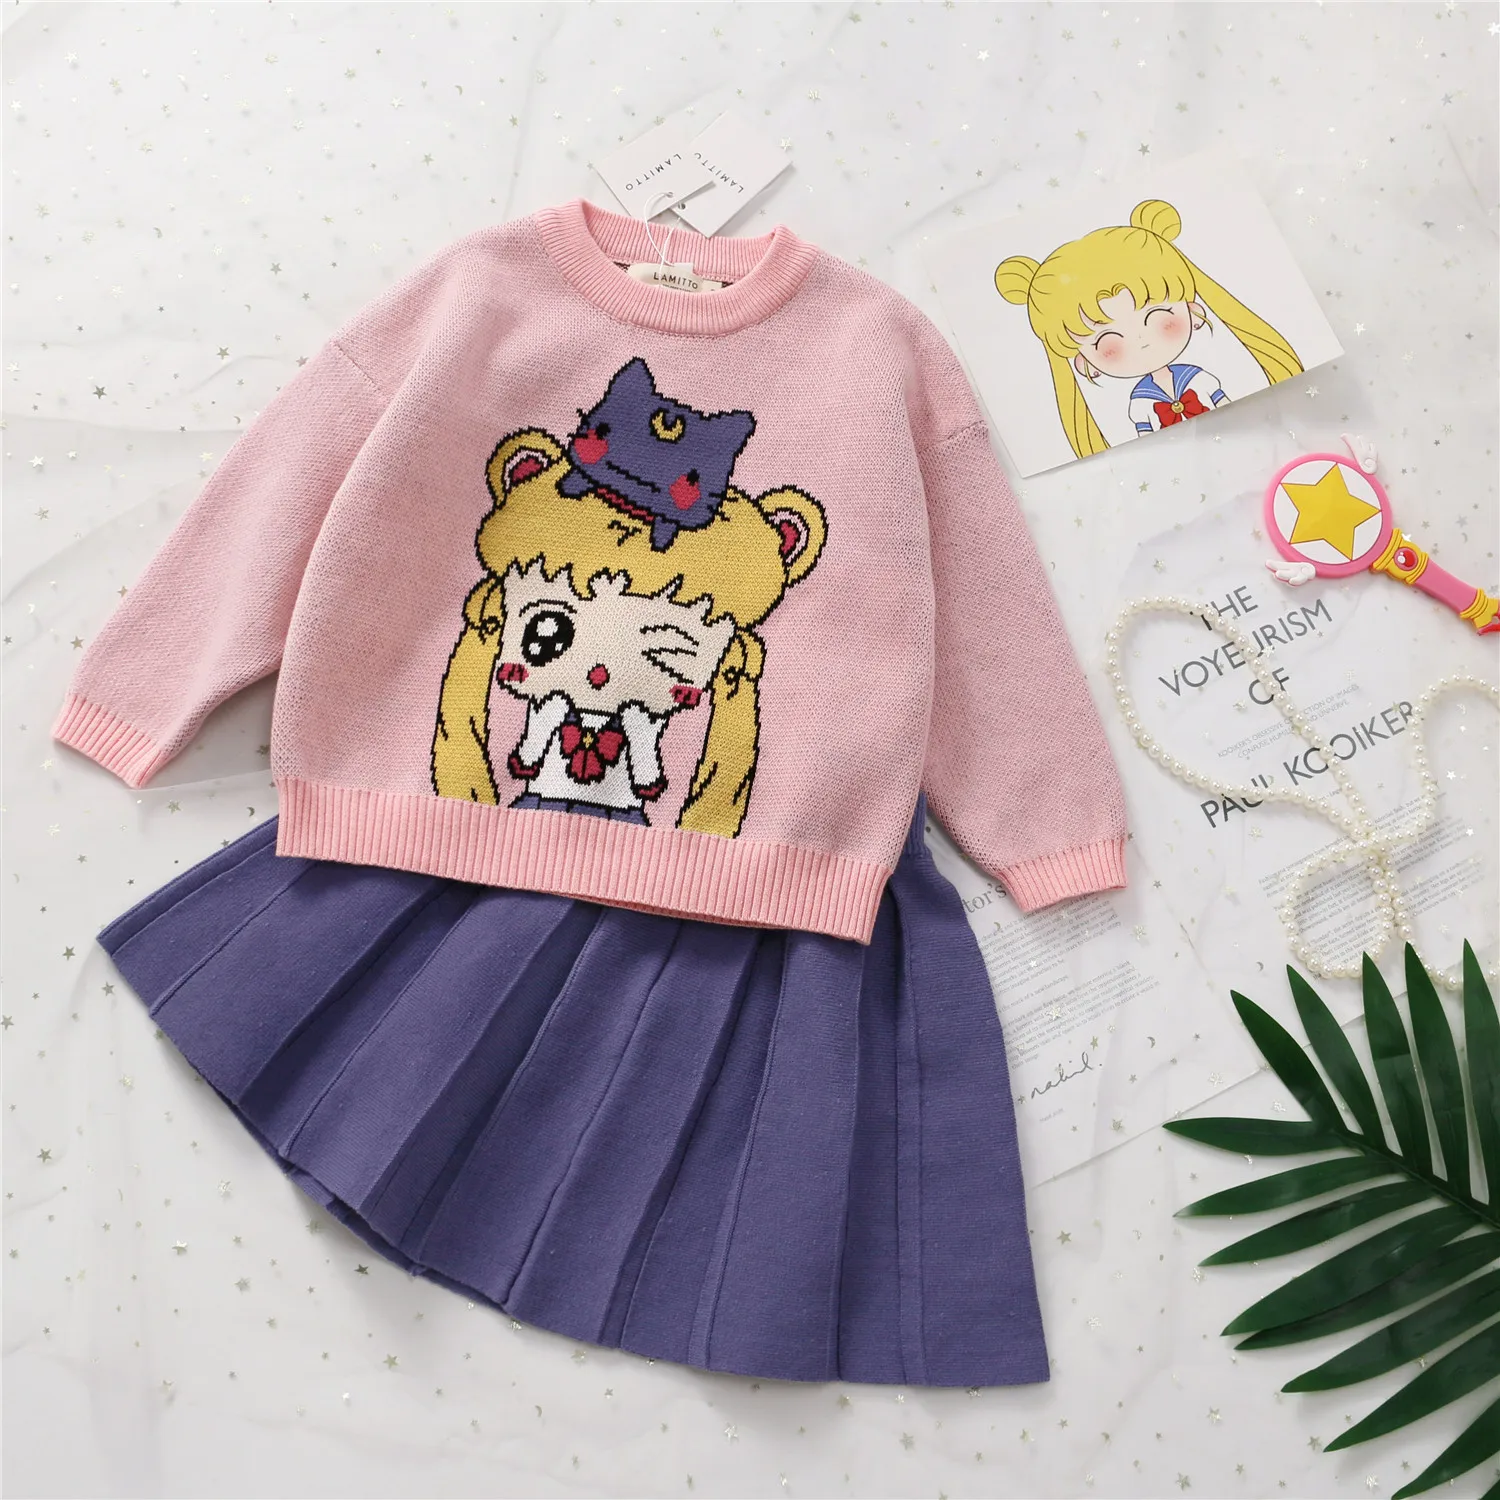 Tonytaobaby/осень-зима; Новинка; детский розовый вязаный свитер; костюм эксклюзивная одежда для детей; гофрированные наряды для девушек